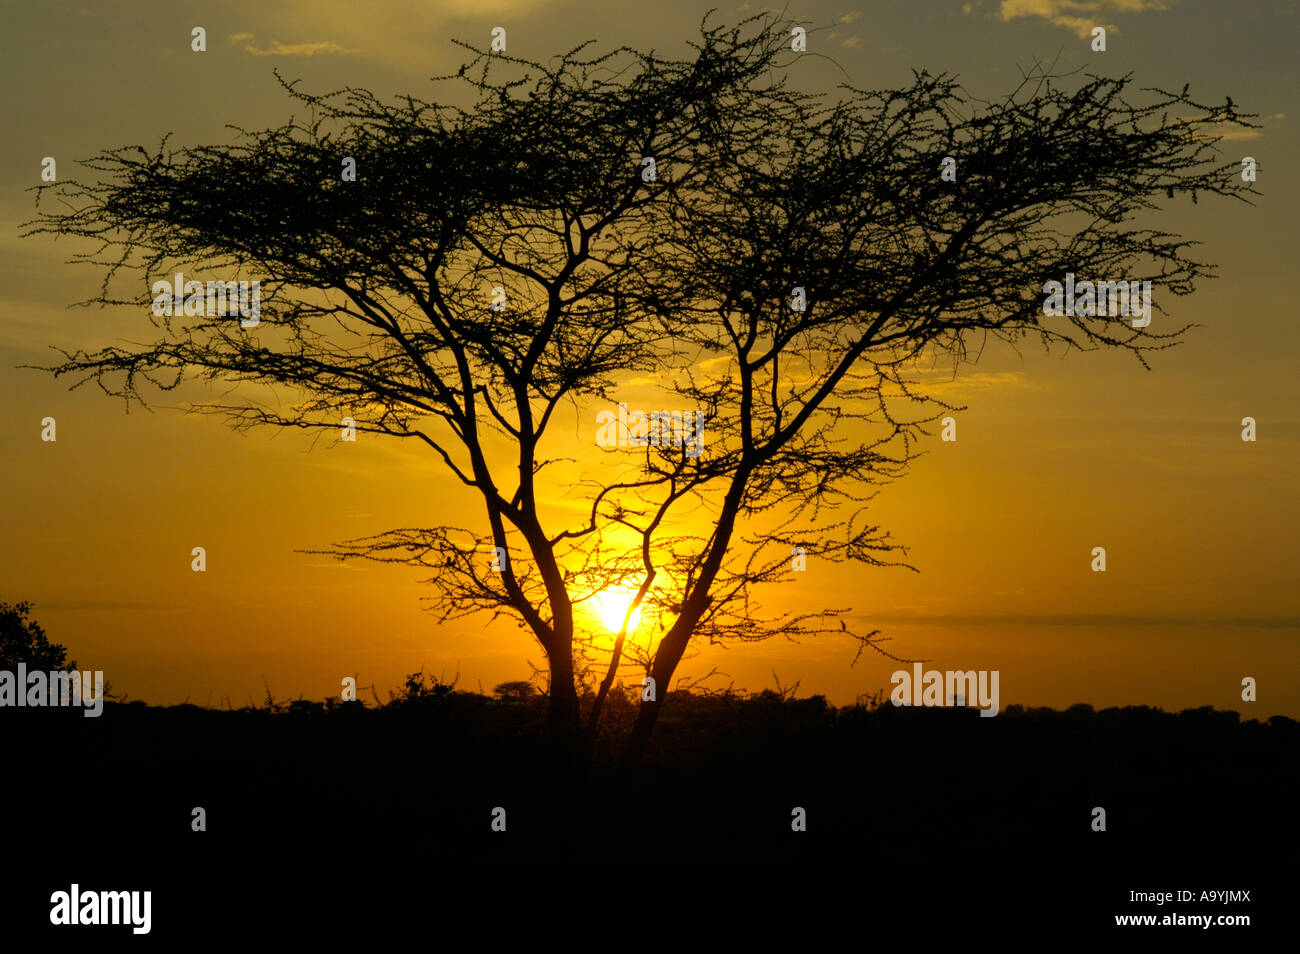 Soleil Orange et le ciel au coucher du soleil derrière un arbre dans le acatia savannnah Turmi Ethiopie Banque D'Images